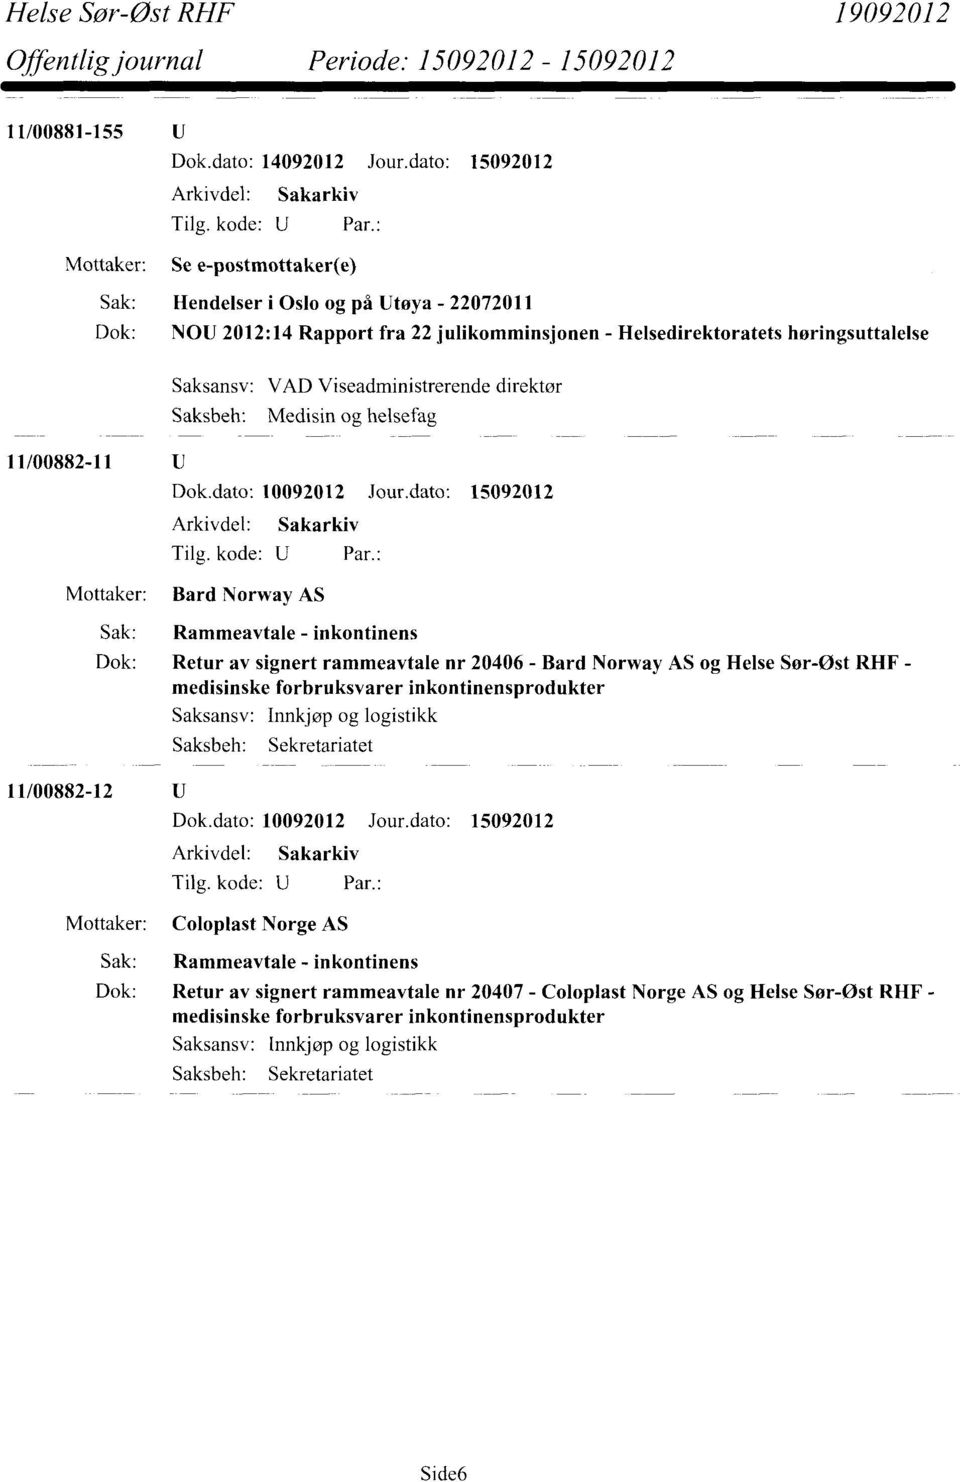 Rammeavtale - inkontinens Dok: Retur av signert rammeavtale nr 20406 - Bard Norway AS og Helse Sør-Øst RHF - medisinske forbruksvarer inkontinensprodukter 11/00882-12